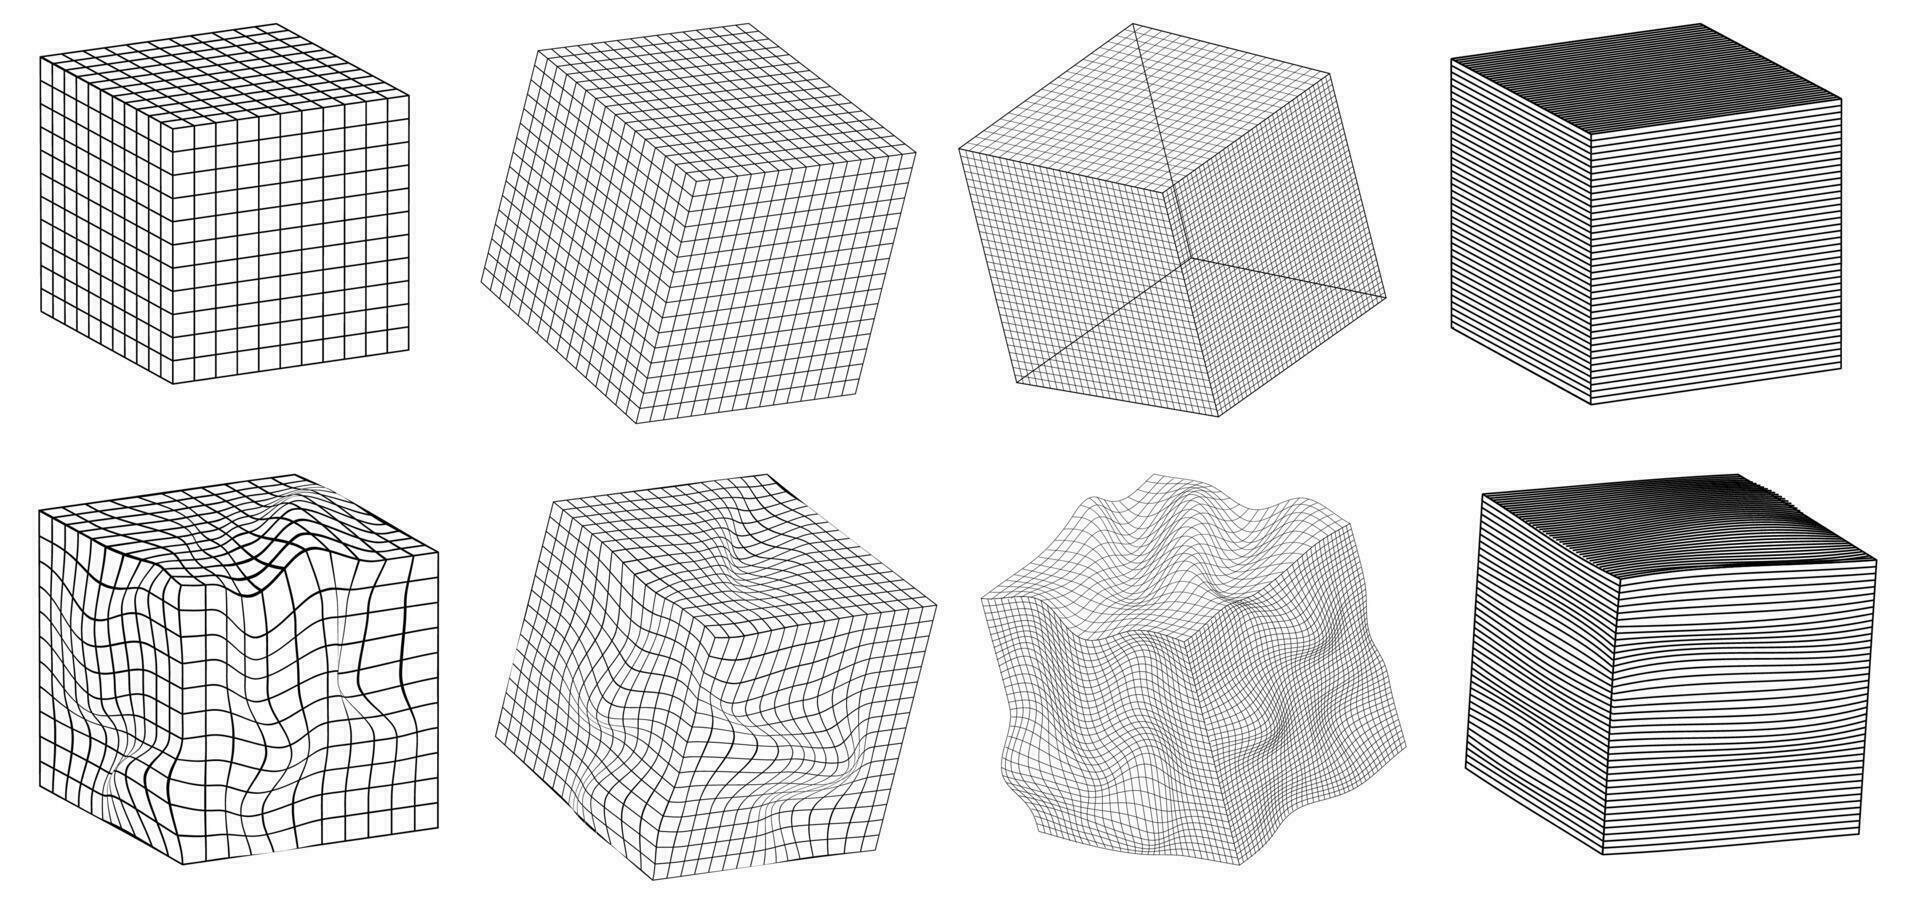 uppsättning kub form klistermärken med annorlunda linjär form inspirerad förbi brutalism, cyberpunk samling konstig trådramar vektor 3d geometrisk former, förvrängning och omvandling av figur, design element